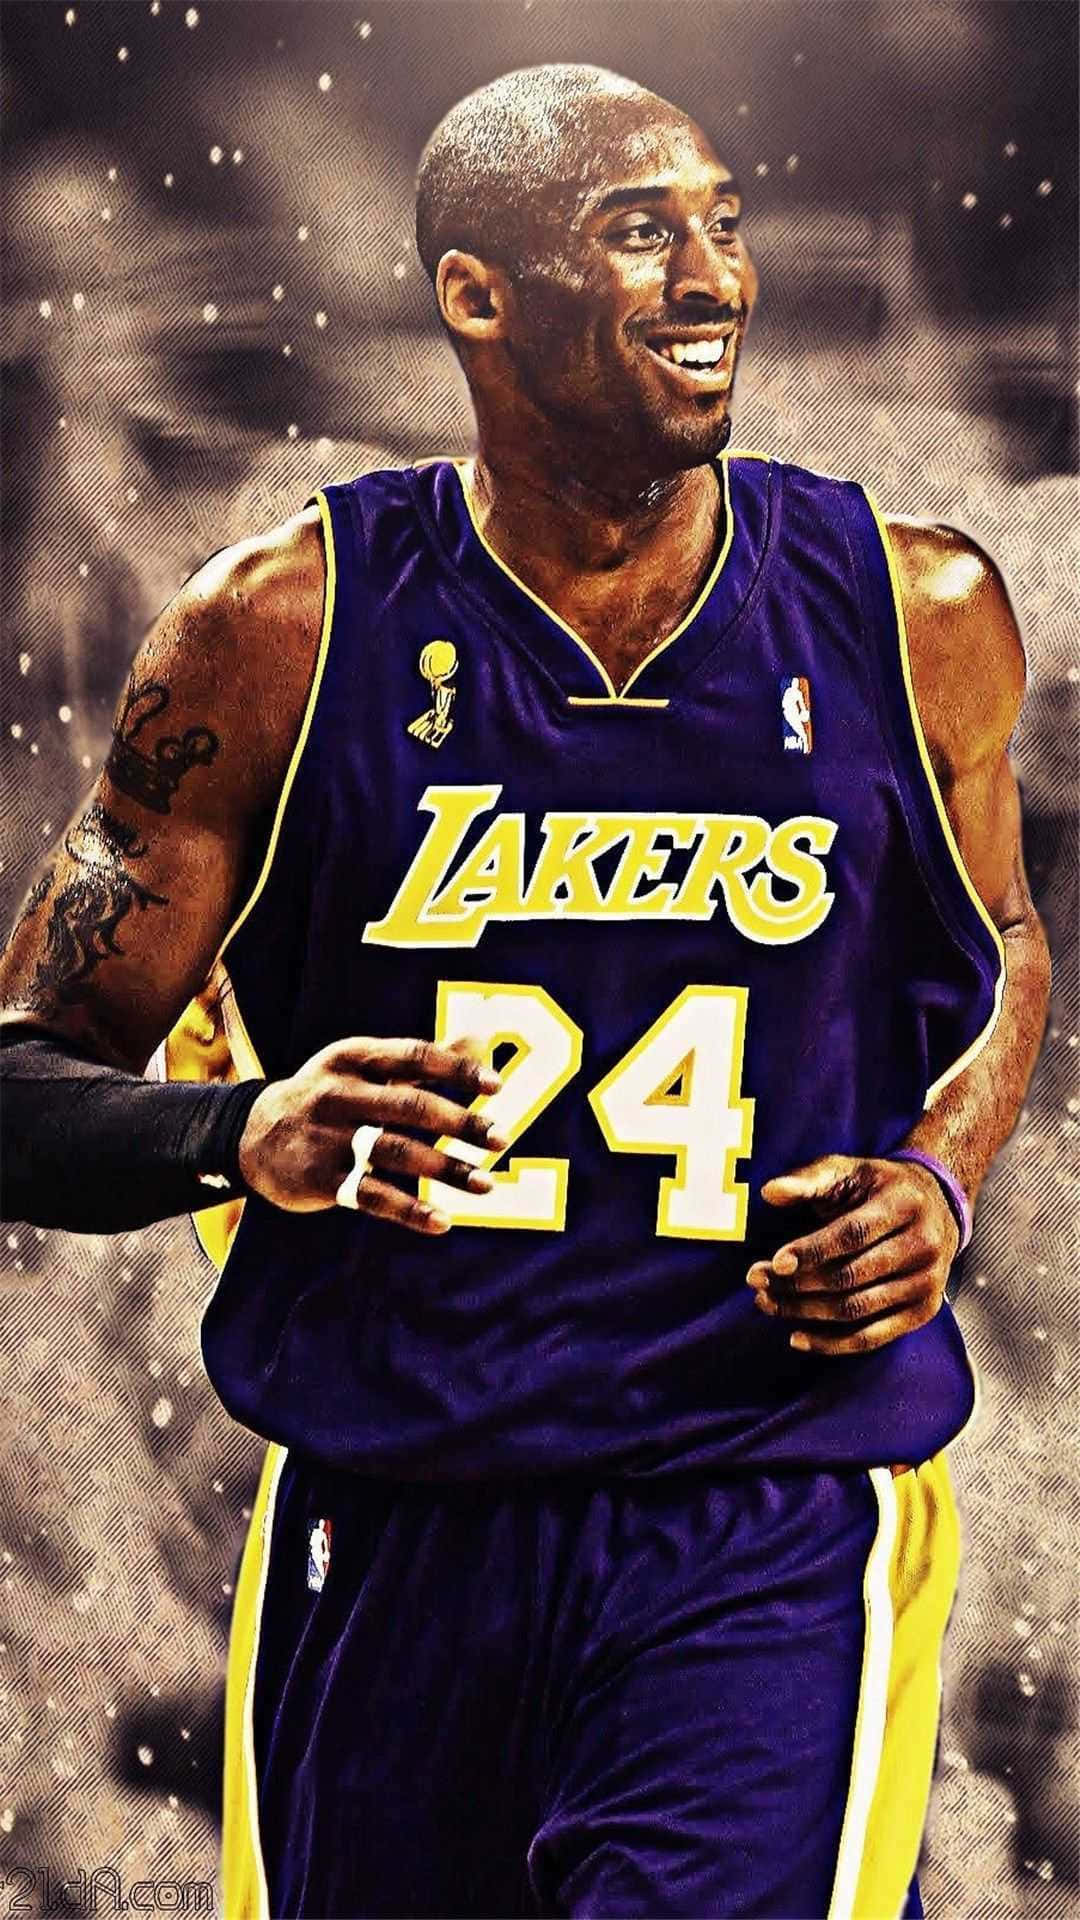 Kobe the Great